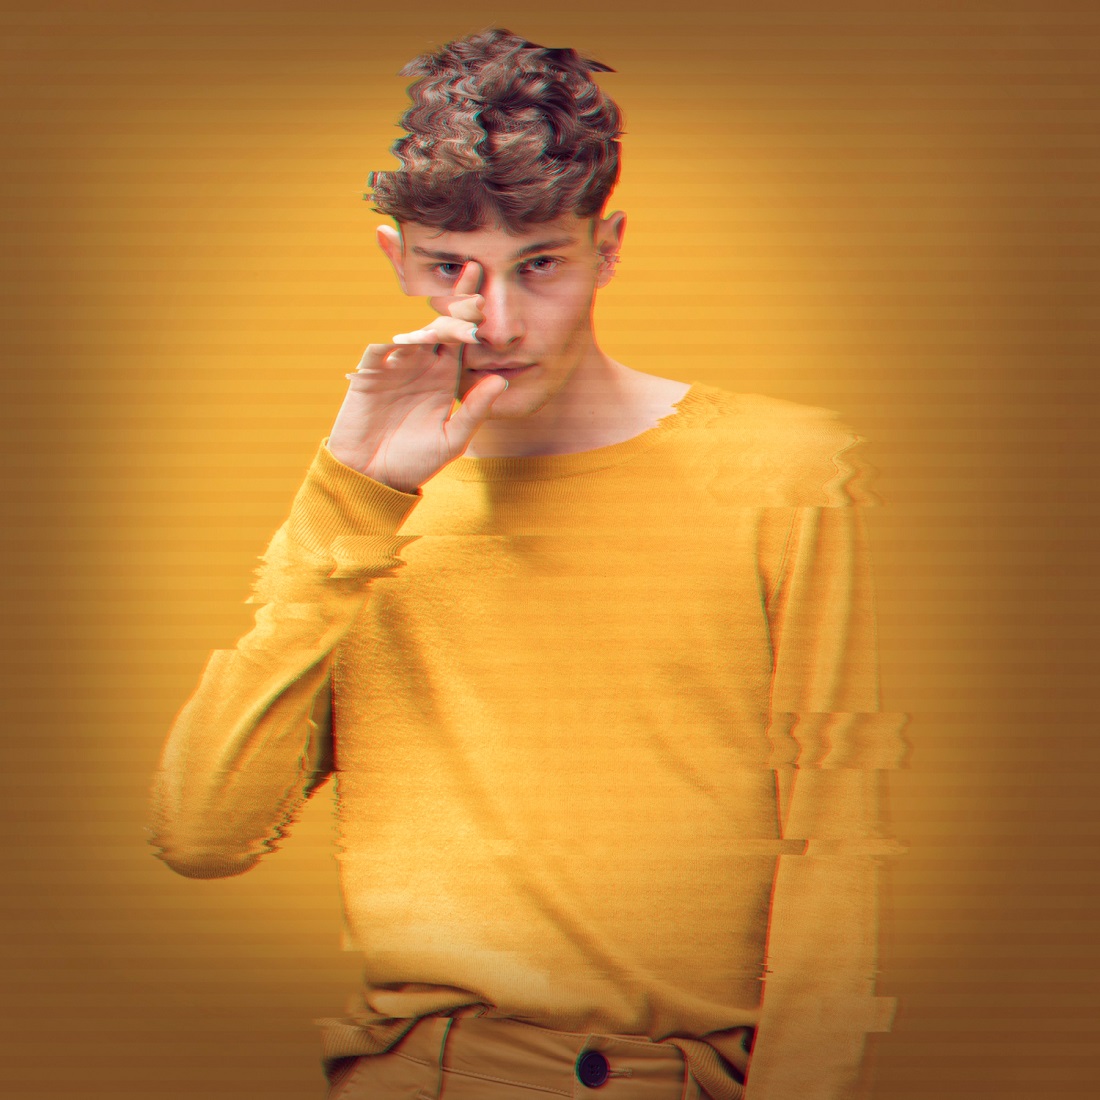 man-yellow-jumper-with-glitch-effect_freepik.jpg